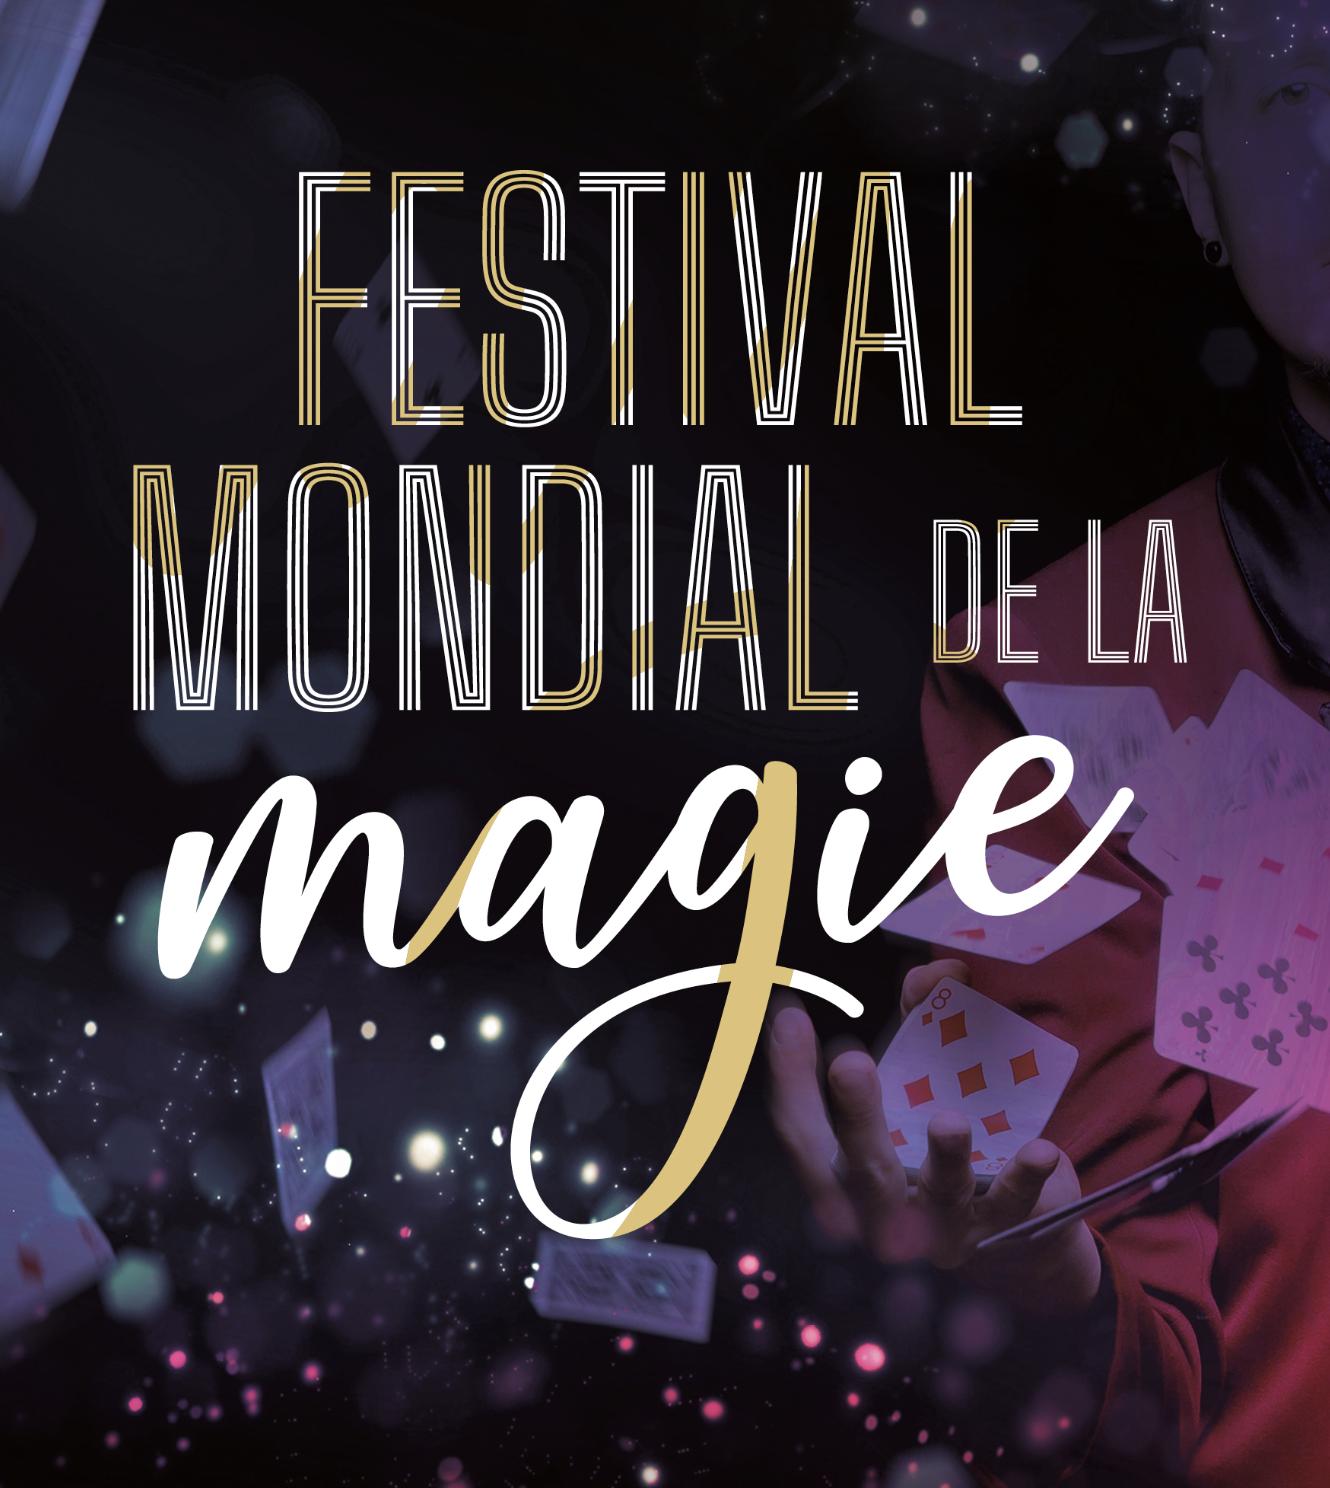 Festival Mondial de la Magie at Le Bascala Tickets